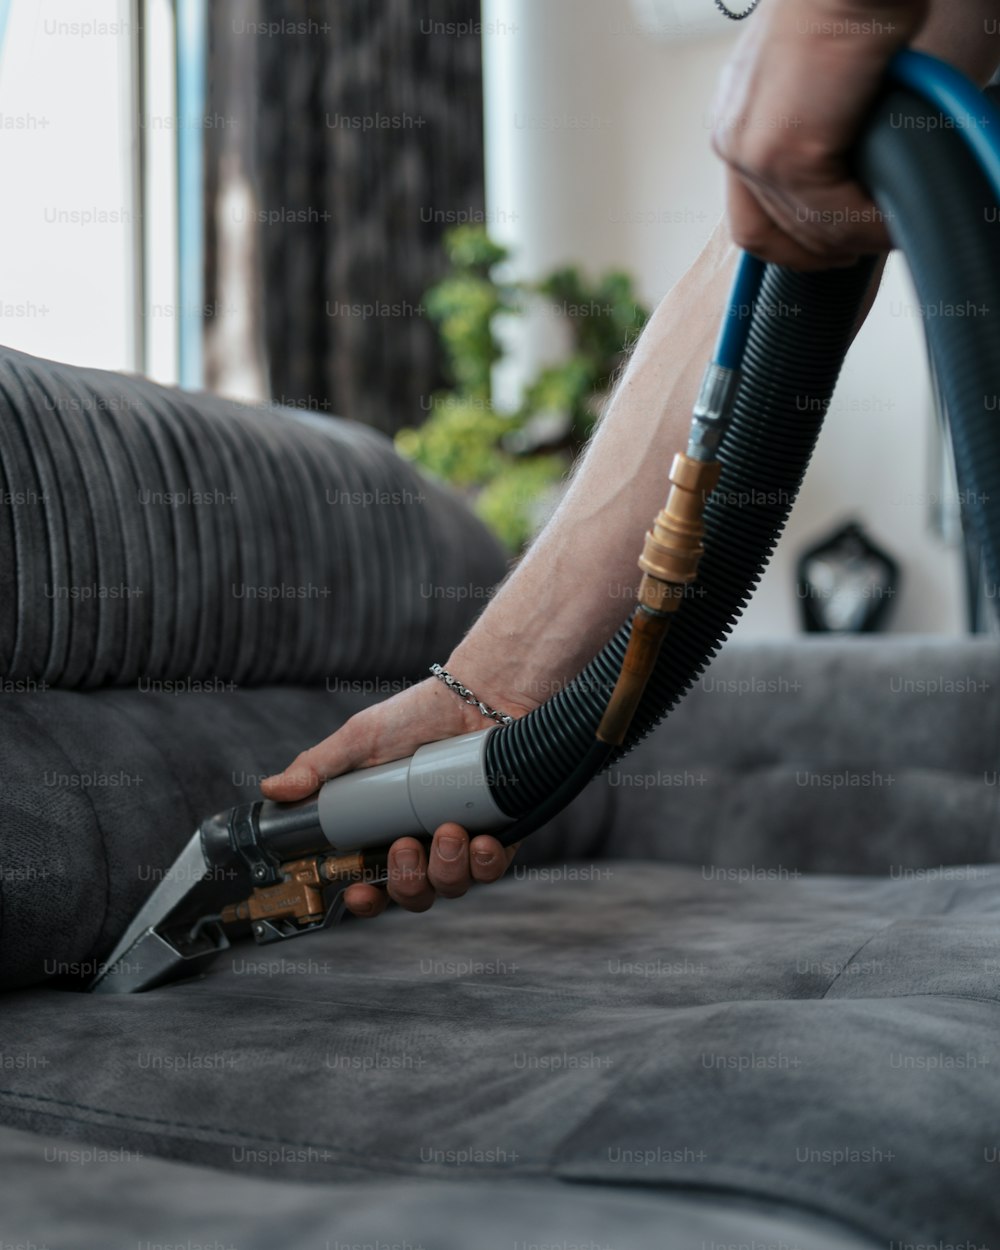 Una persona che usa un aspirapolvere per pulire un divano foto – Pulizia  Immagine su Unsplash